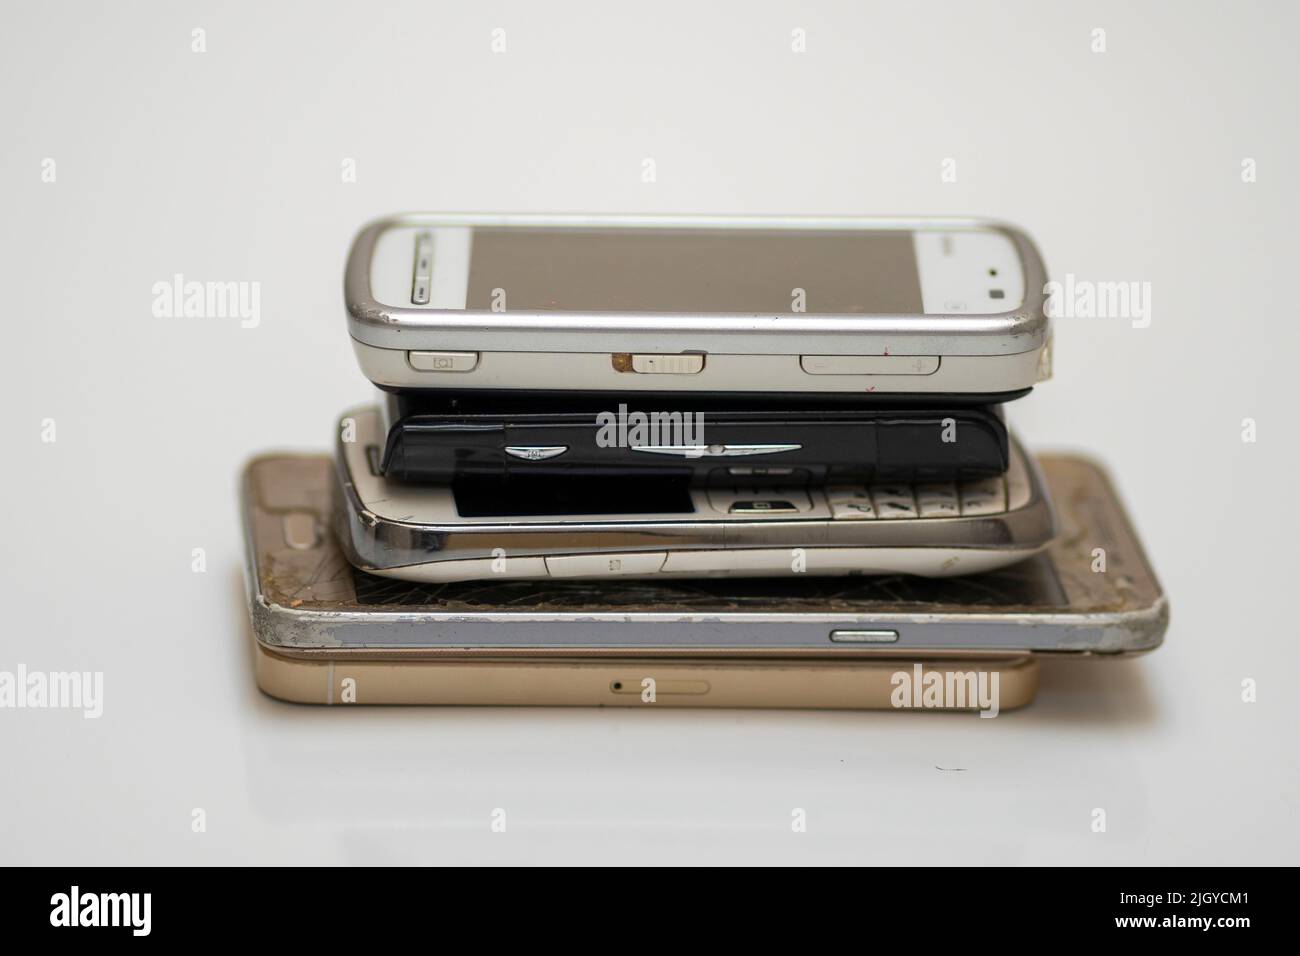 Un primer plano de los smartphones dañados desechados Foto de stock